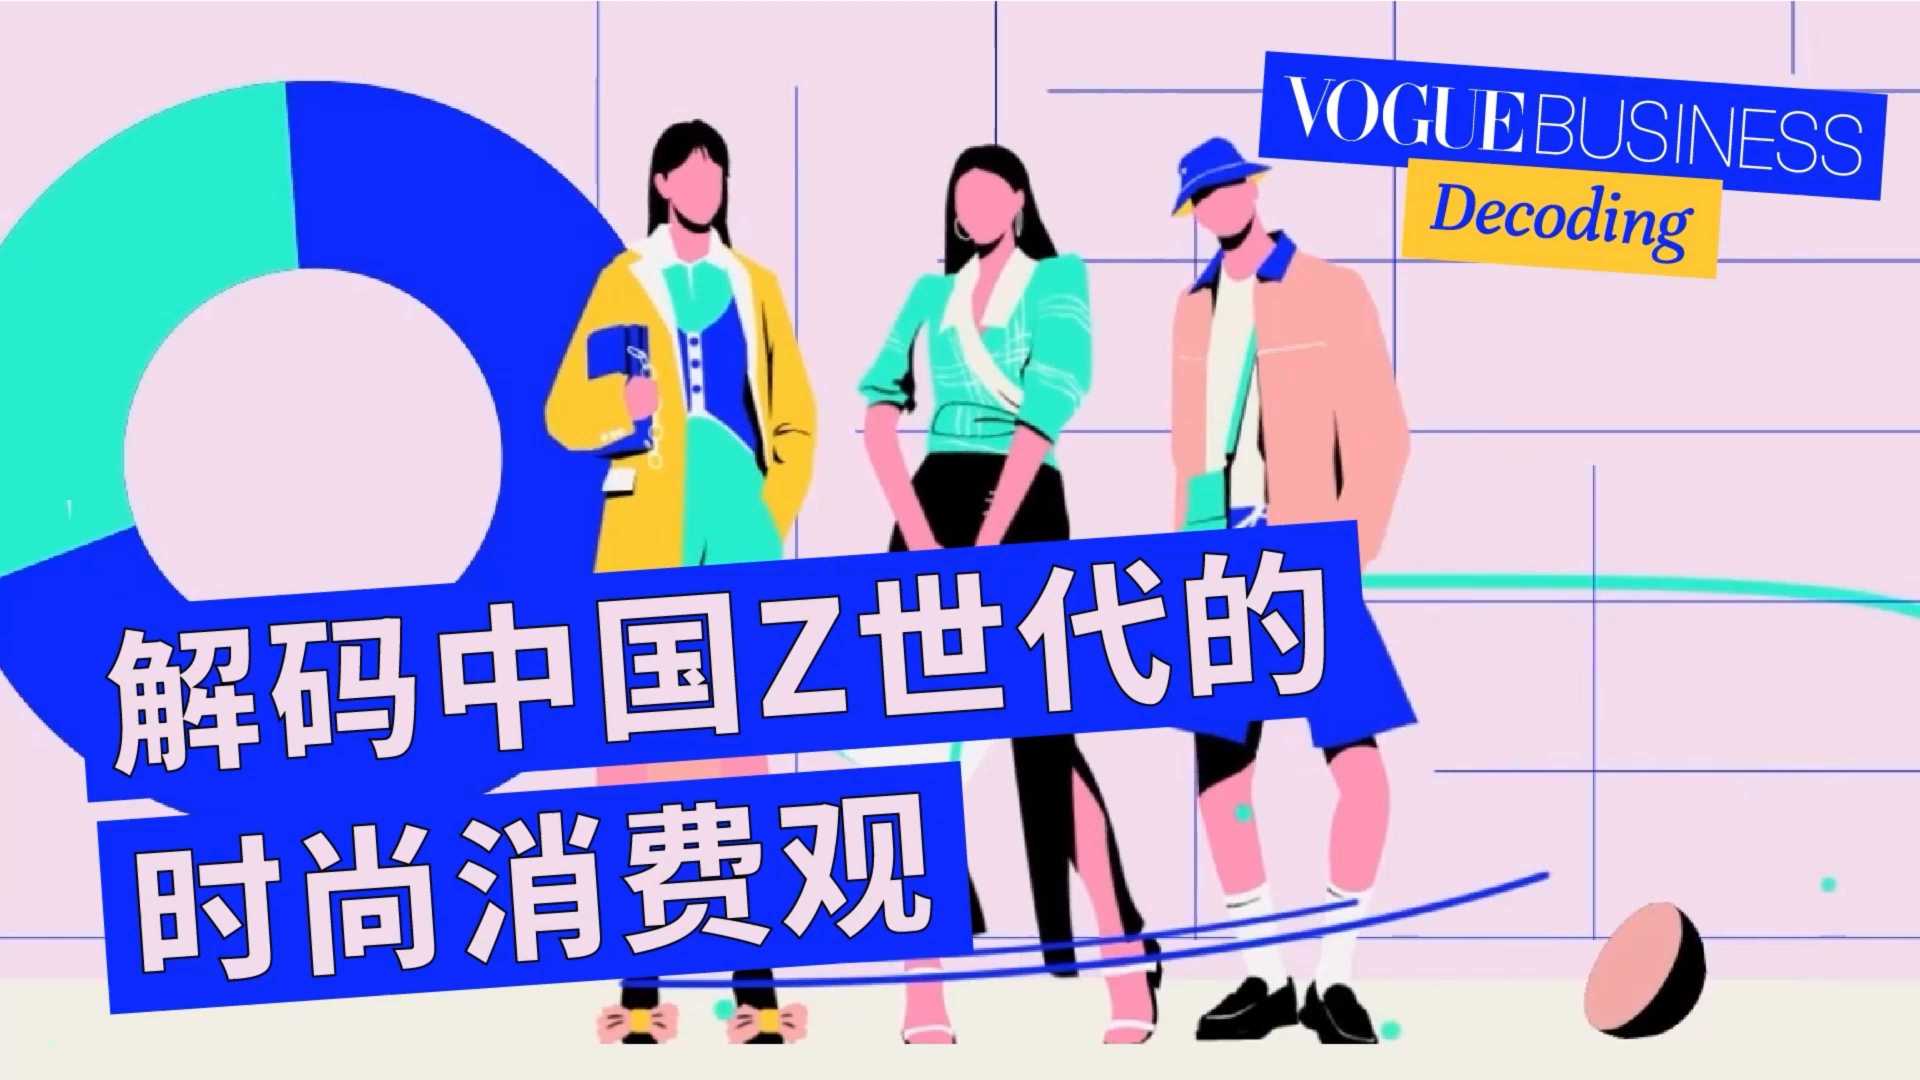 时尚插画风格MG动画·VogueBusiness | GENZ文化价值观1.0